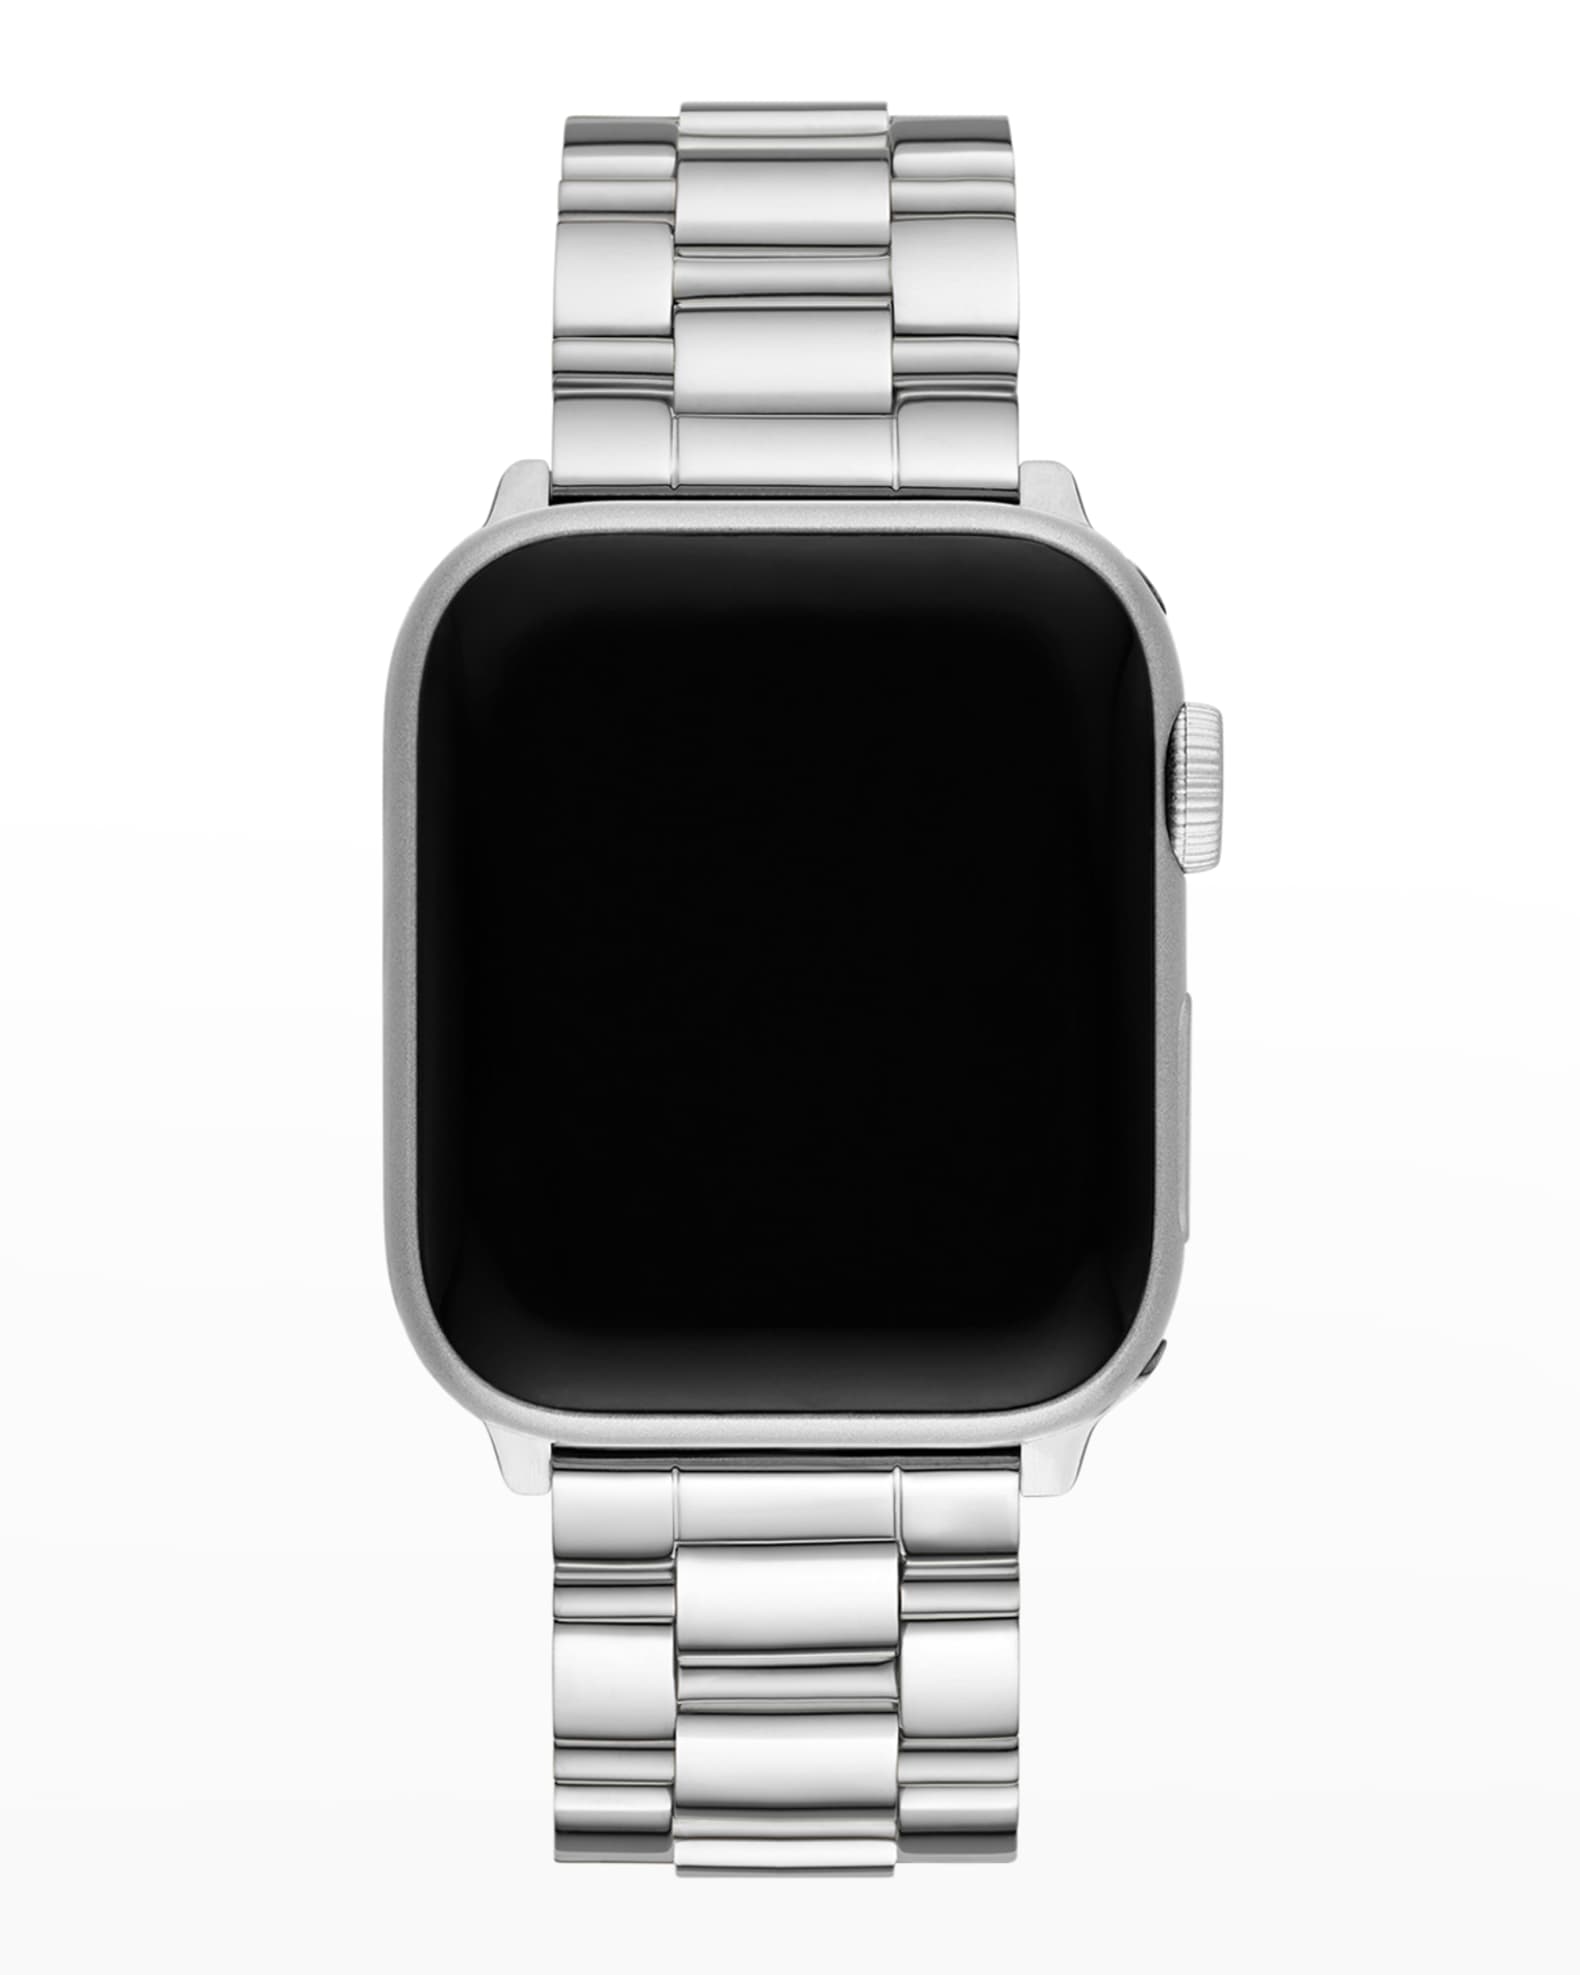 MICHELE Apple Watch 3-Link Bracelet Strap in Stainless Steel | Neiman ...